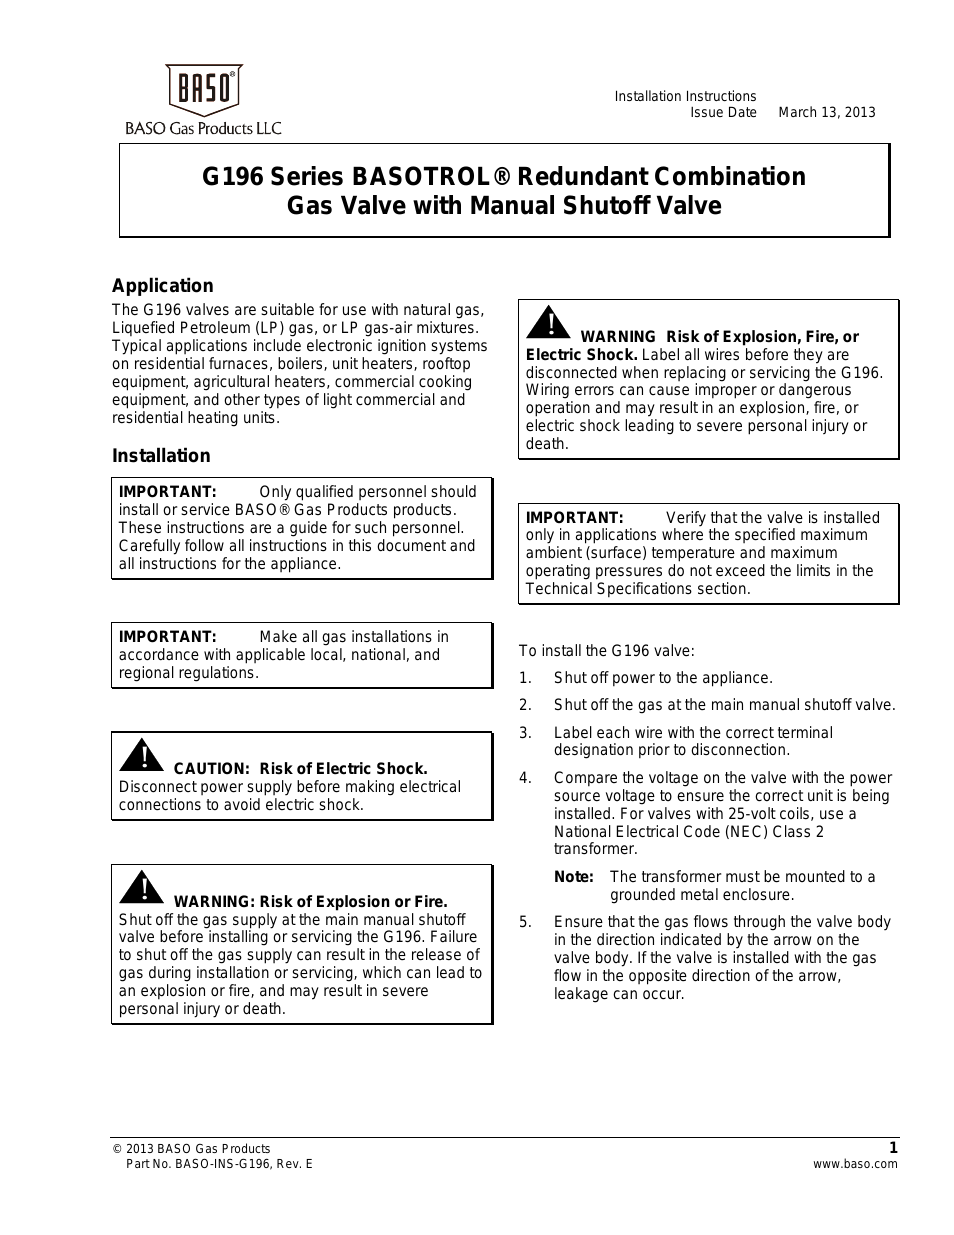 G196 Series BASOTROL CE Approved Gas Valve